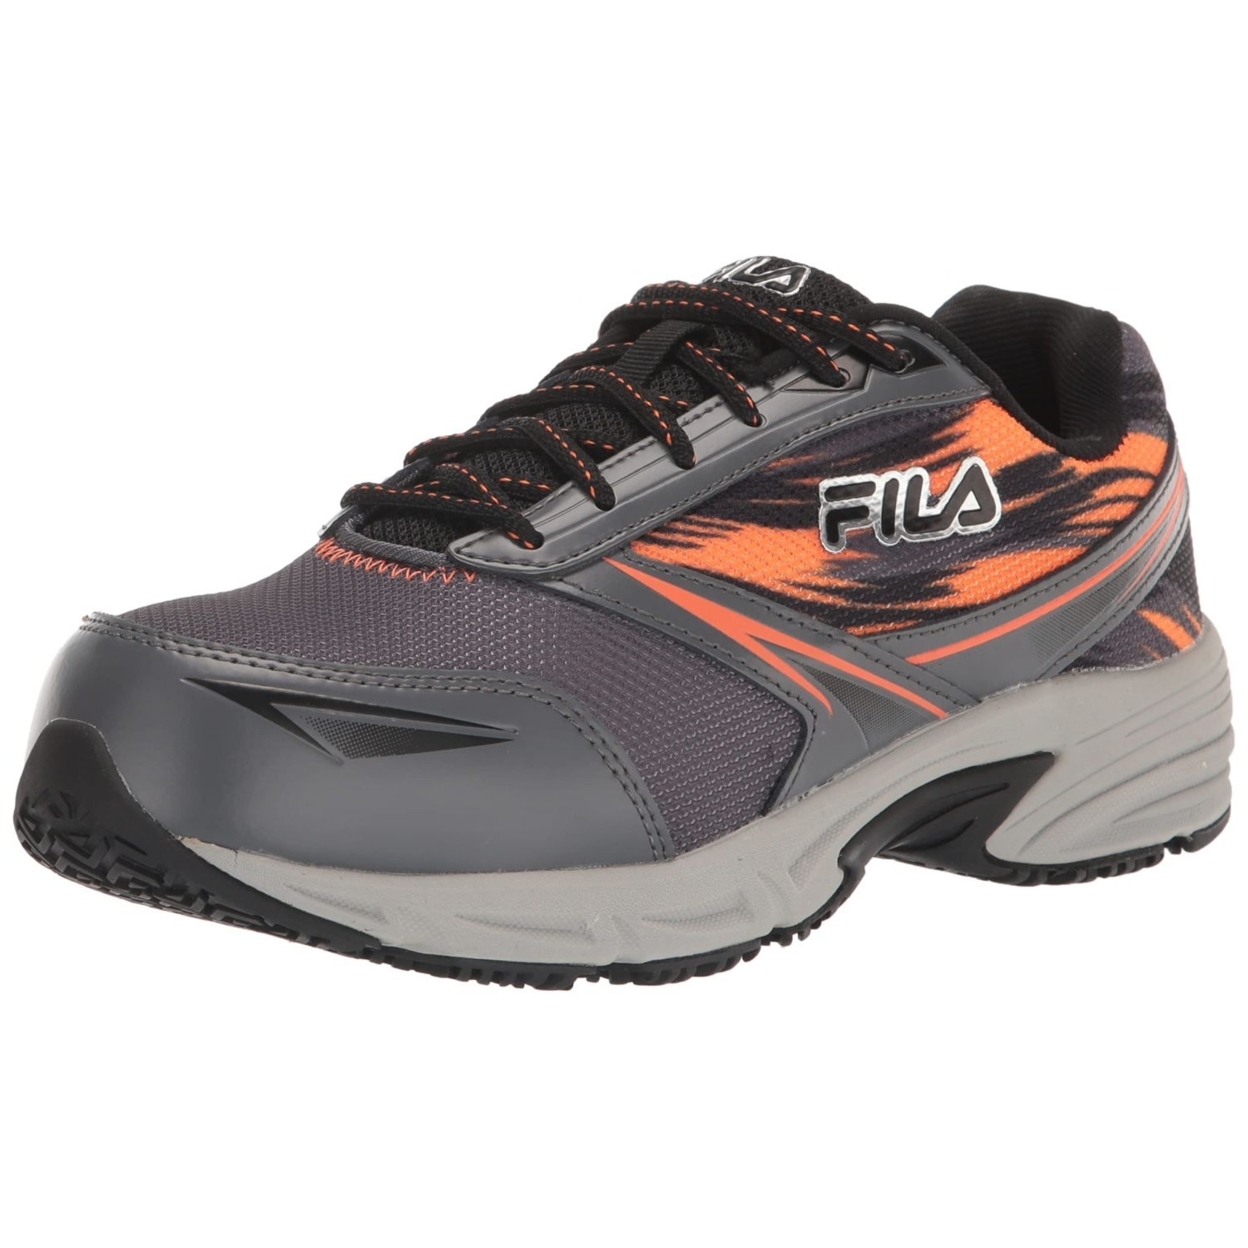 Fila Menâs Memory Meiera 2 Slip Resistant And Composite Toe Work Shoe CSRK/BLK/VORN - CSRK/BLK/VORN, 9